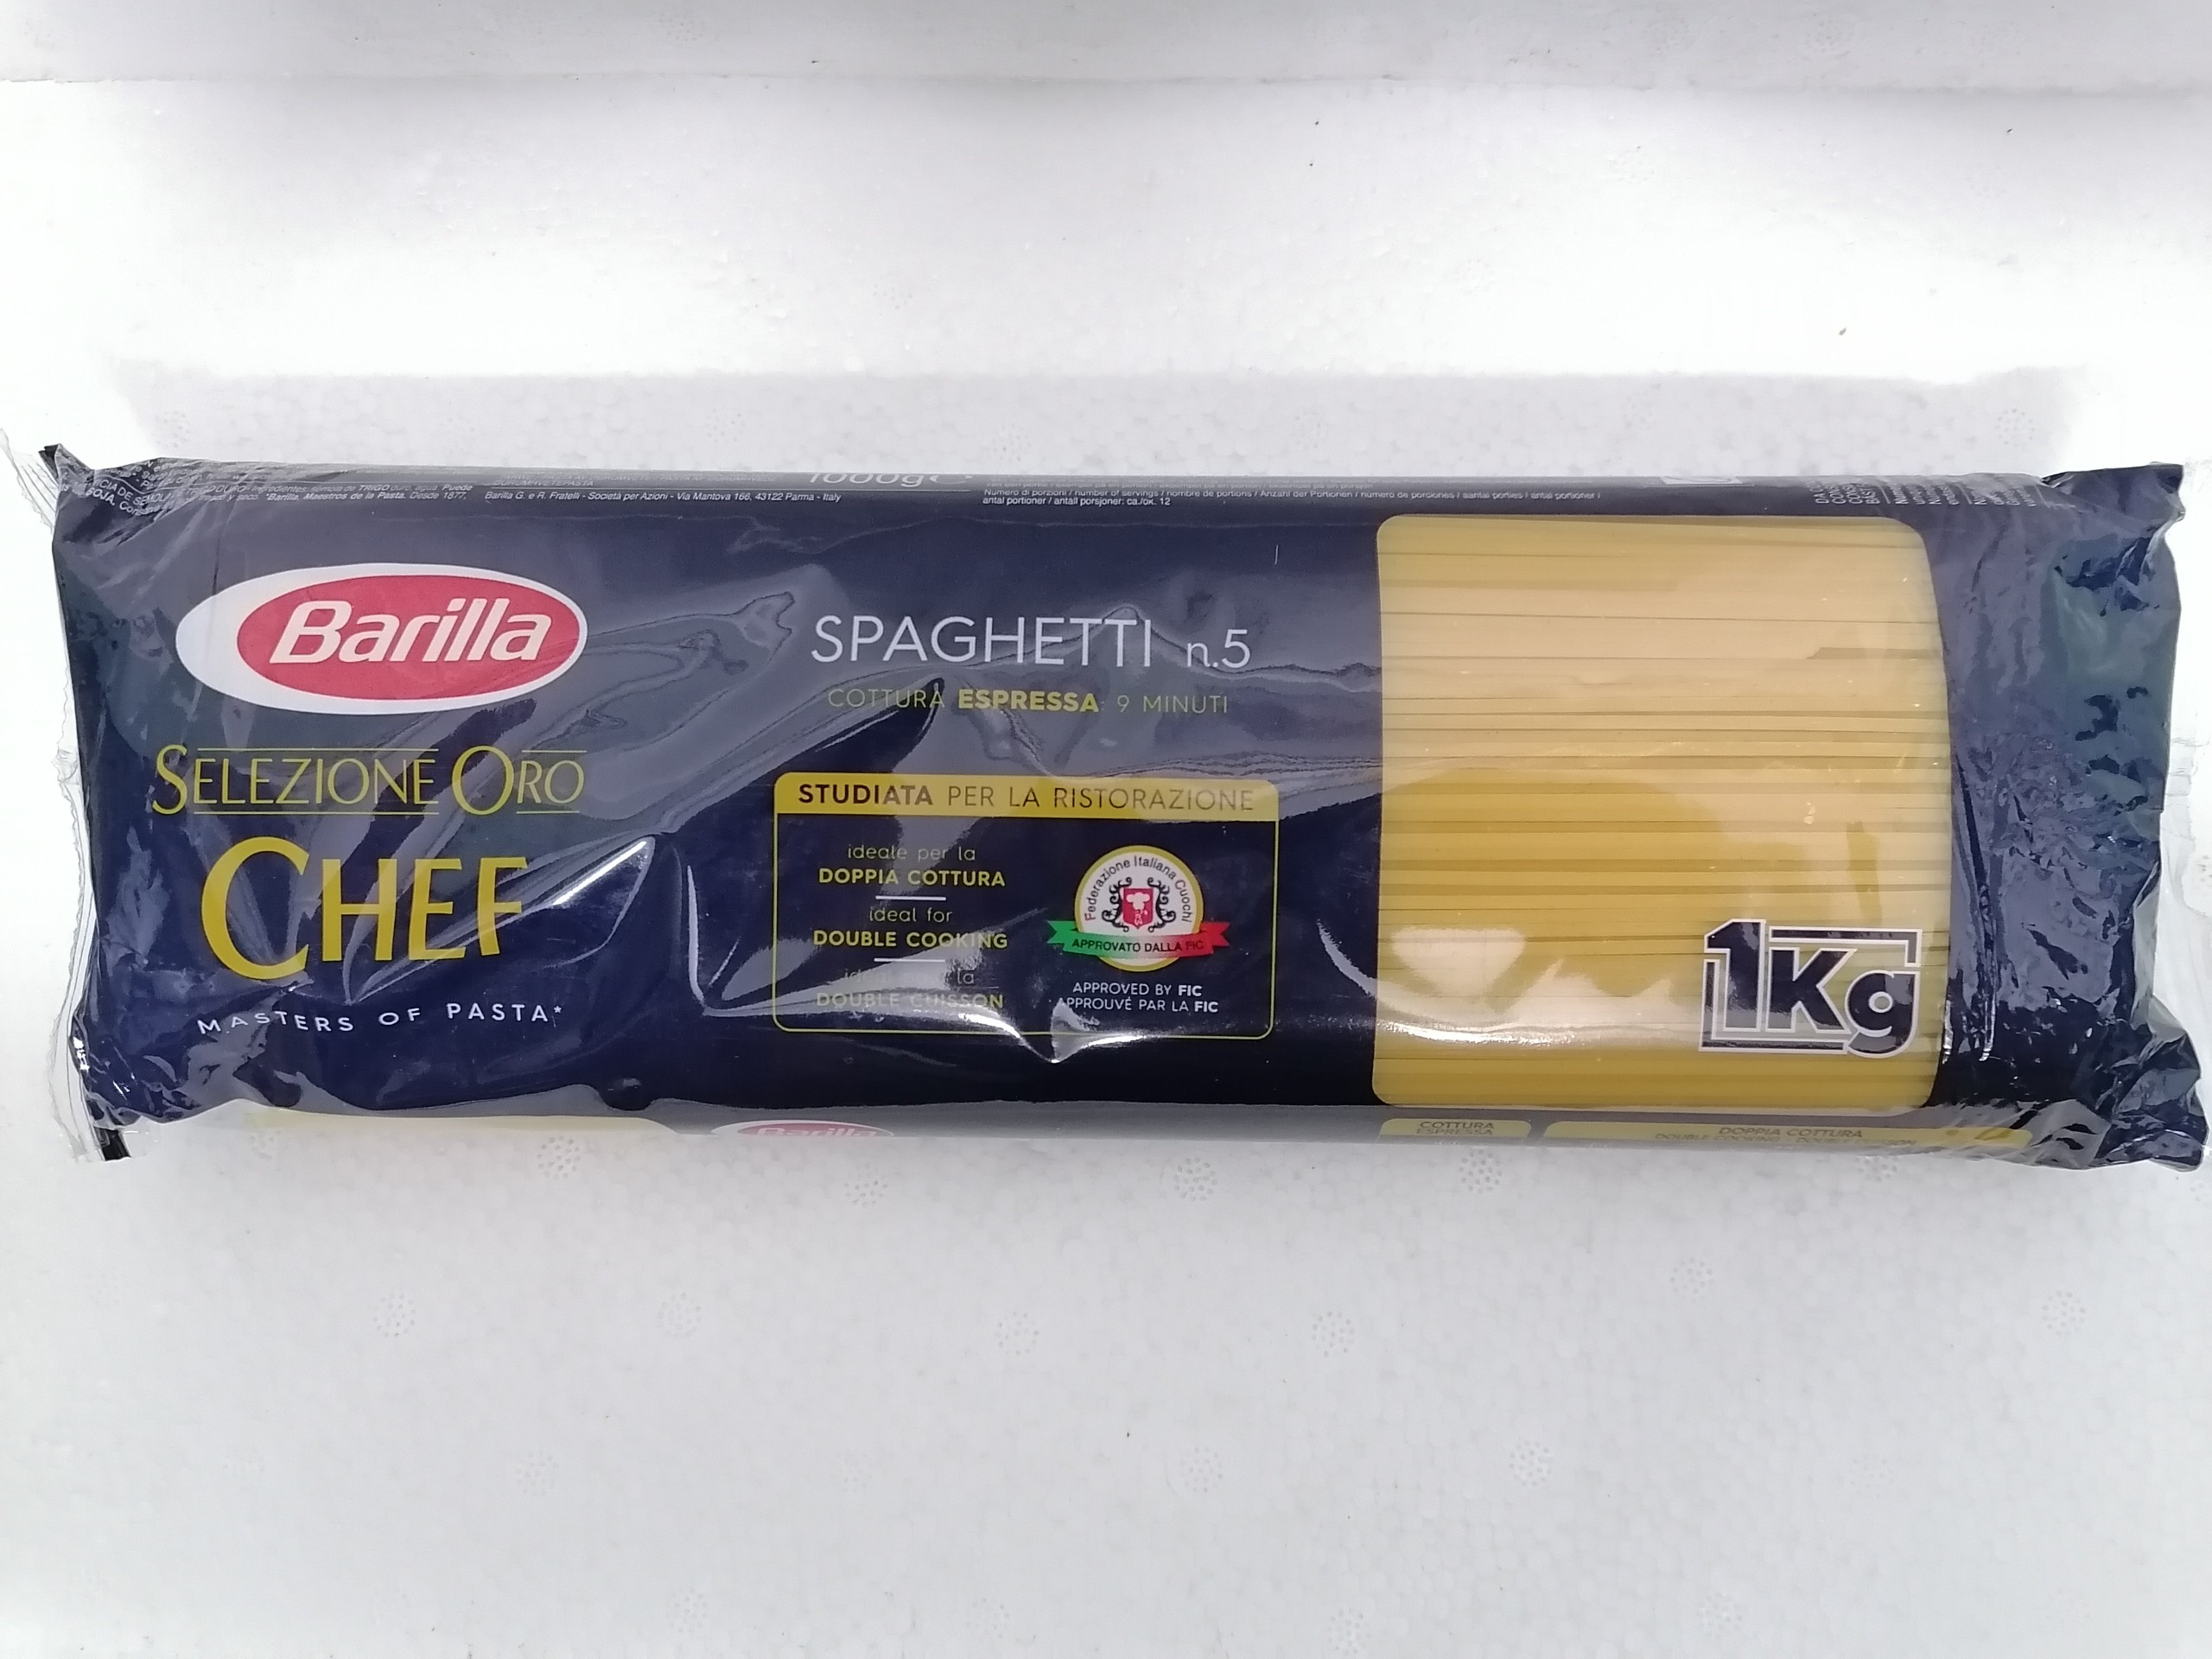 Túi 1Kg - Oro Chef no.5 Mì Ý số 5 Italia BARILLA Selezione Spaghetti anm-hk